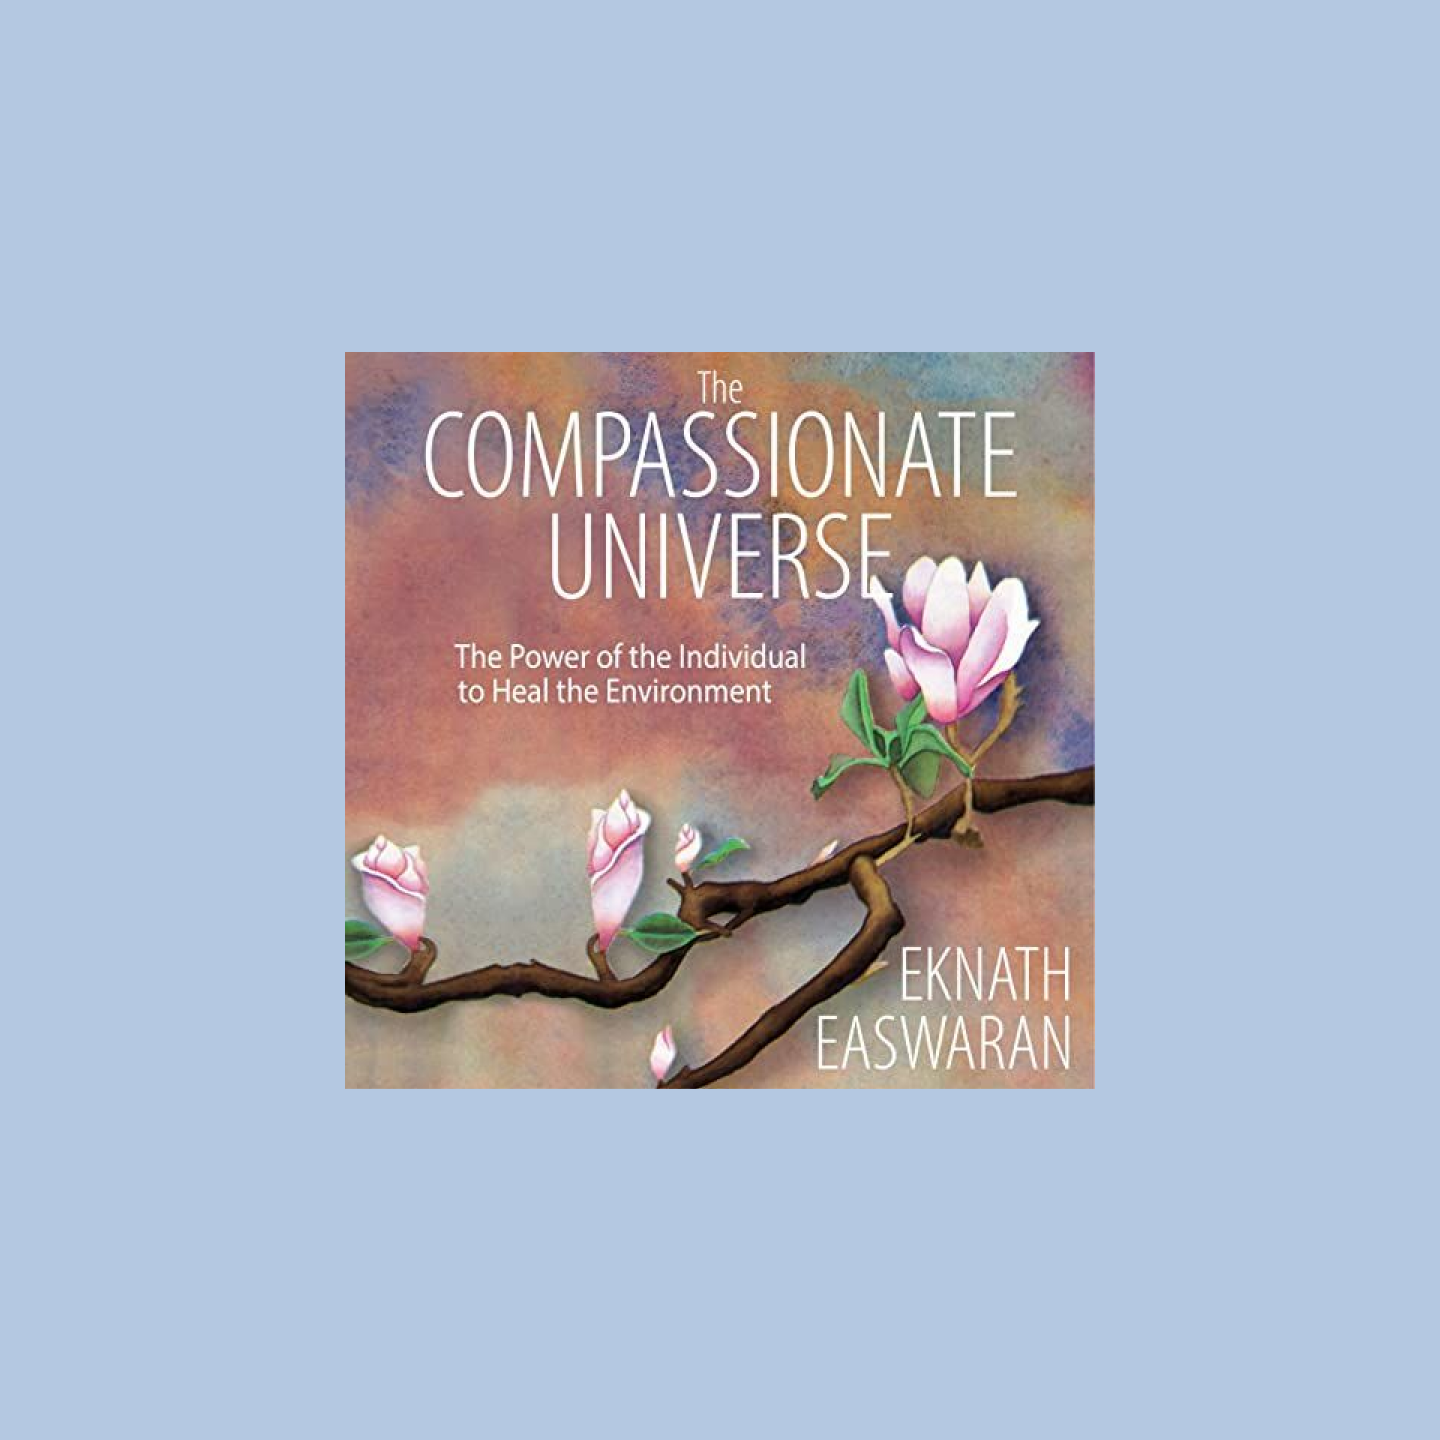 Lydbokomslag: «The Compassionate Universe» med et kirsebærtre i blomst